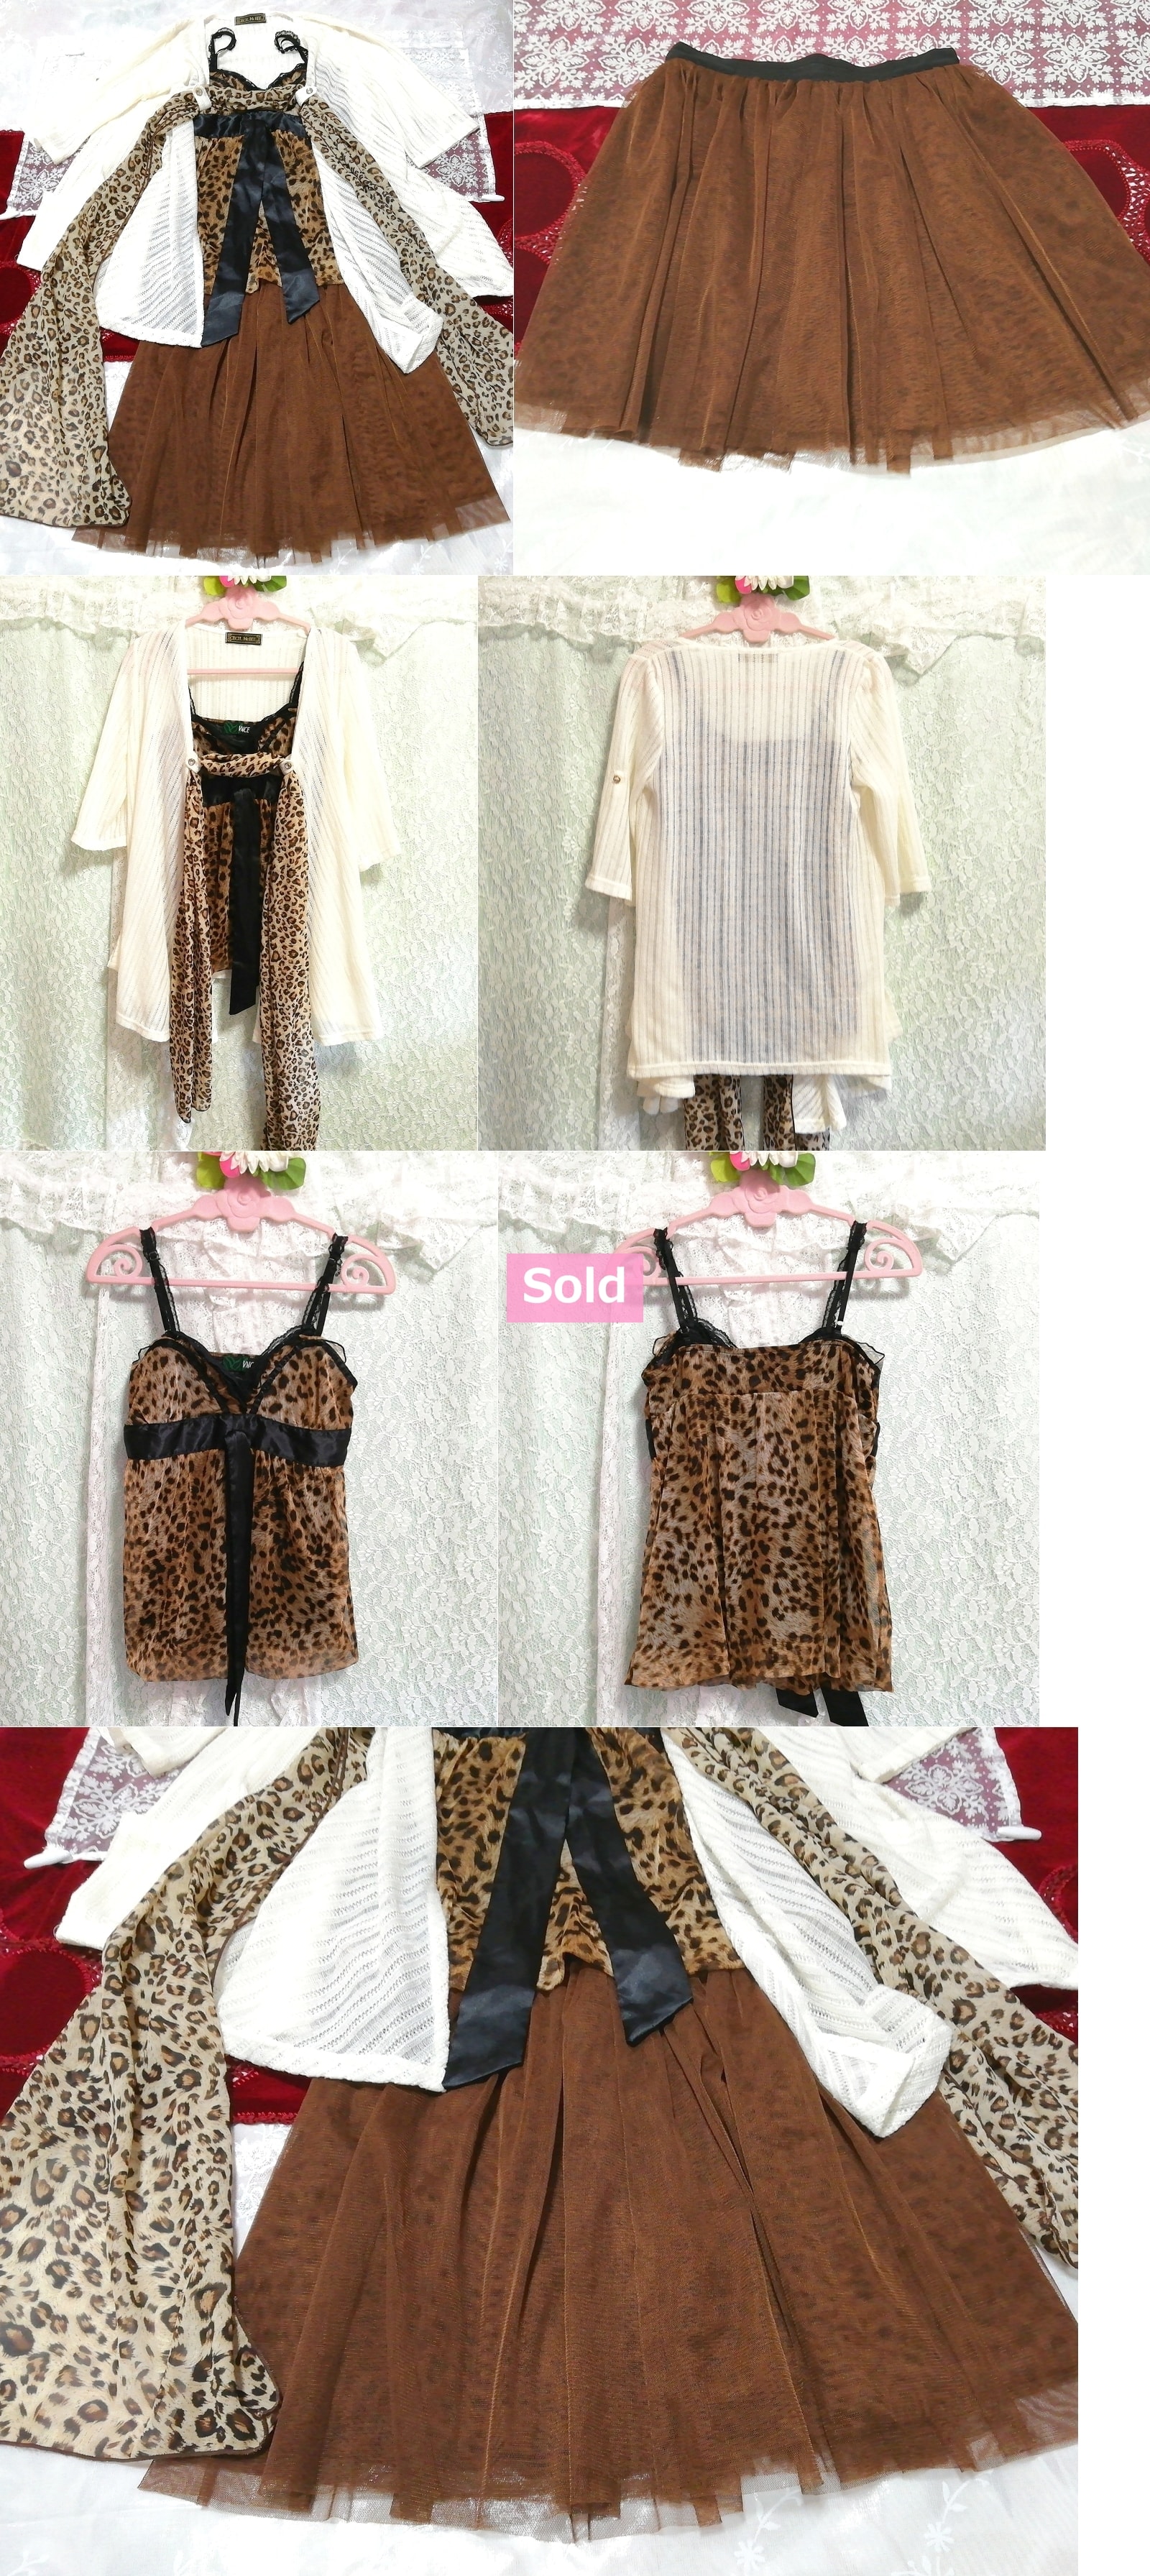 Cárdigan blanco estampado leopardo camisola marrón minifalda de tul bata camisón, moda, moda para damas, ropa de dormir, pijama